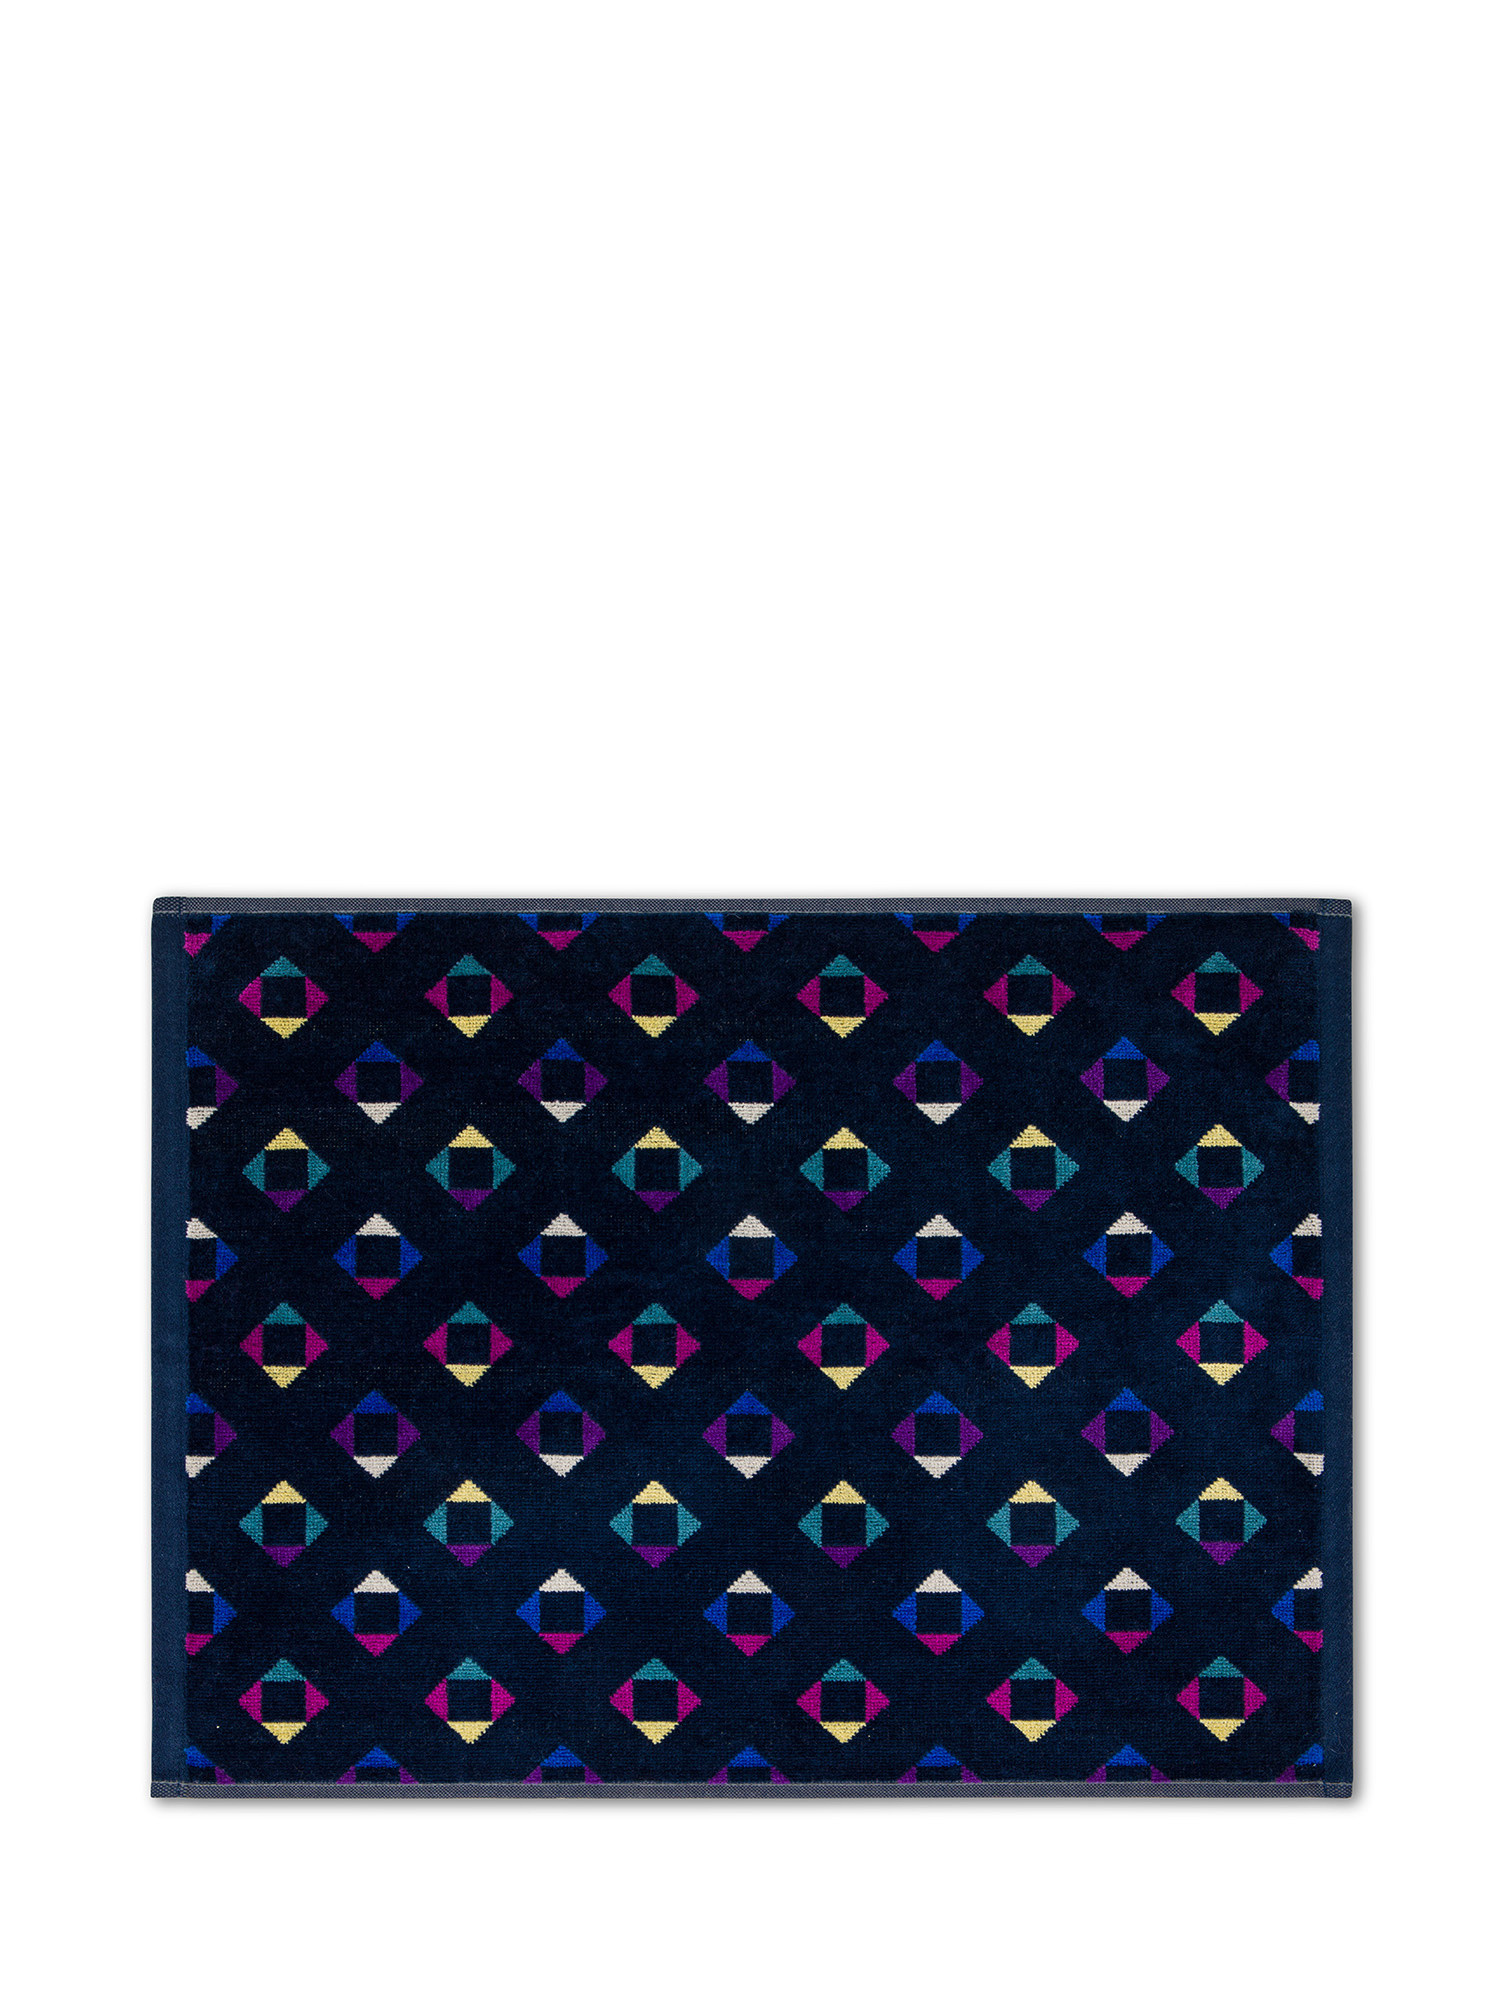 Asciugamano in velour di cotone con fantasia geometrica, Multicolor, large image number 1